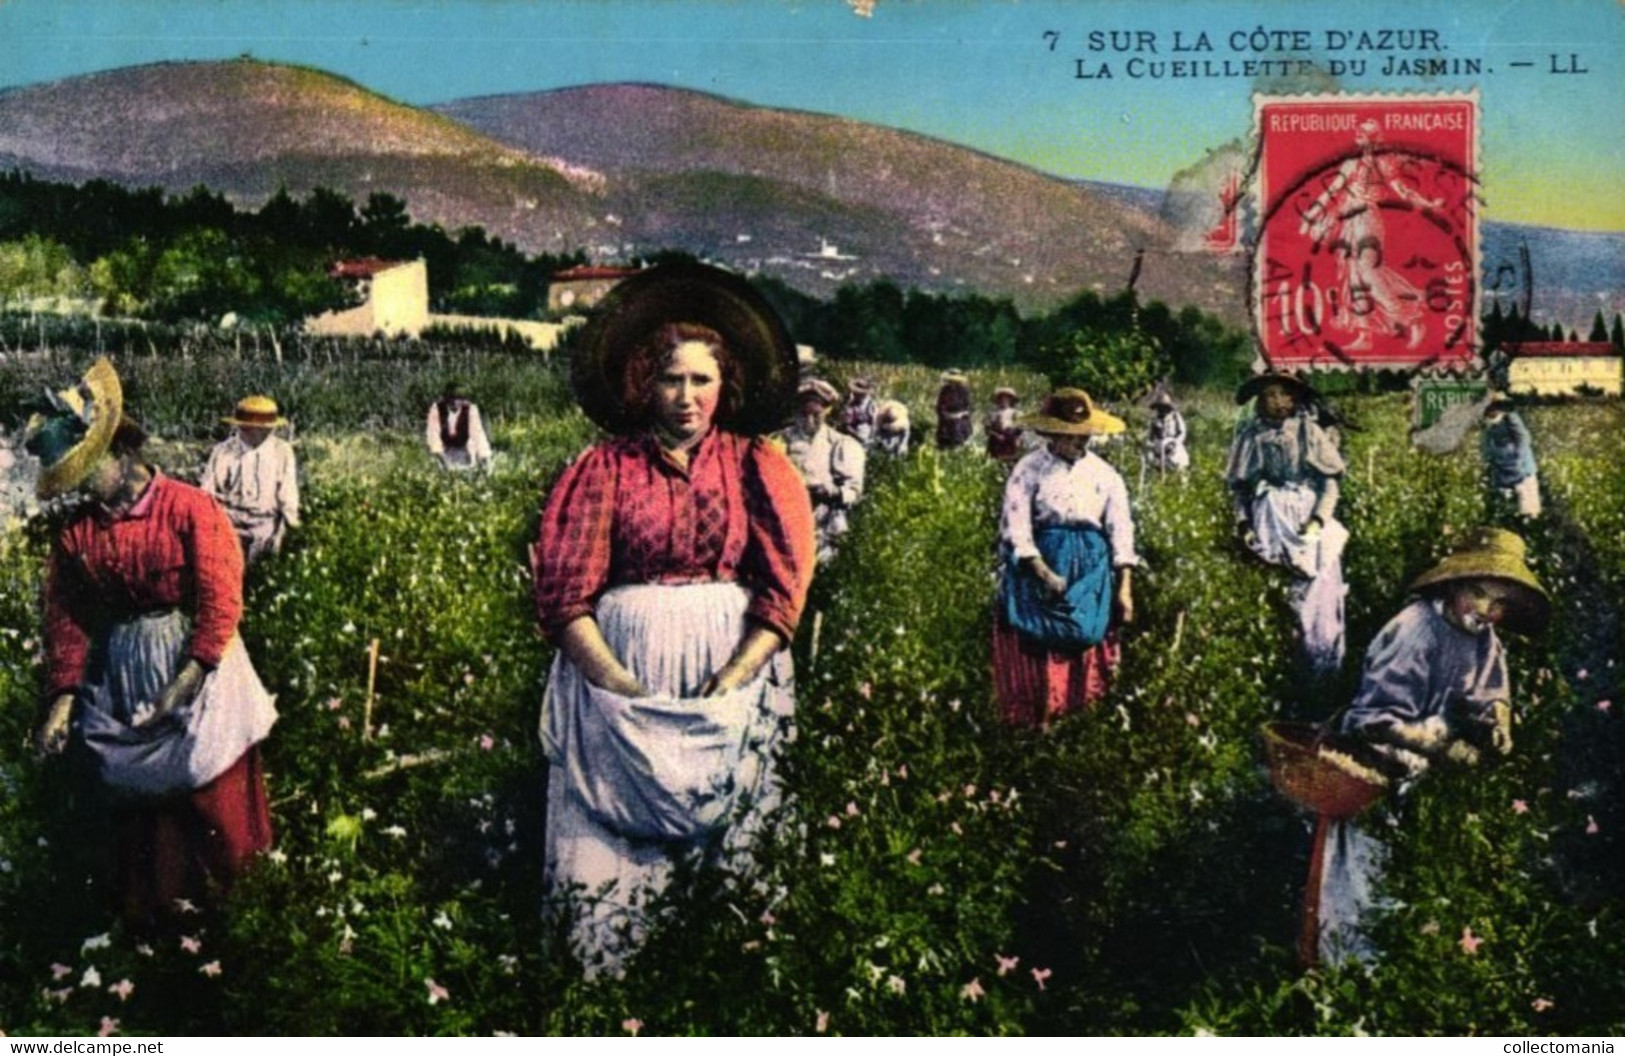 6 cartes chromo Fabrication de l'Essence de Roses 1908  2CP Cueilette des fleurs de Jasmin Parfumerie Bruno Court Grasse